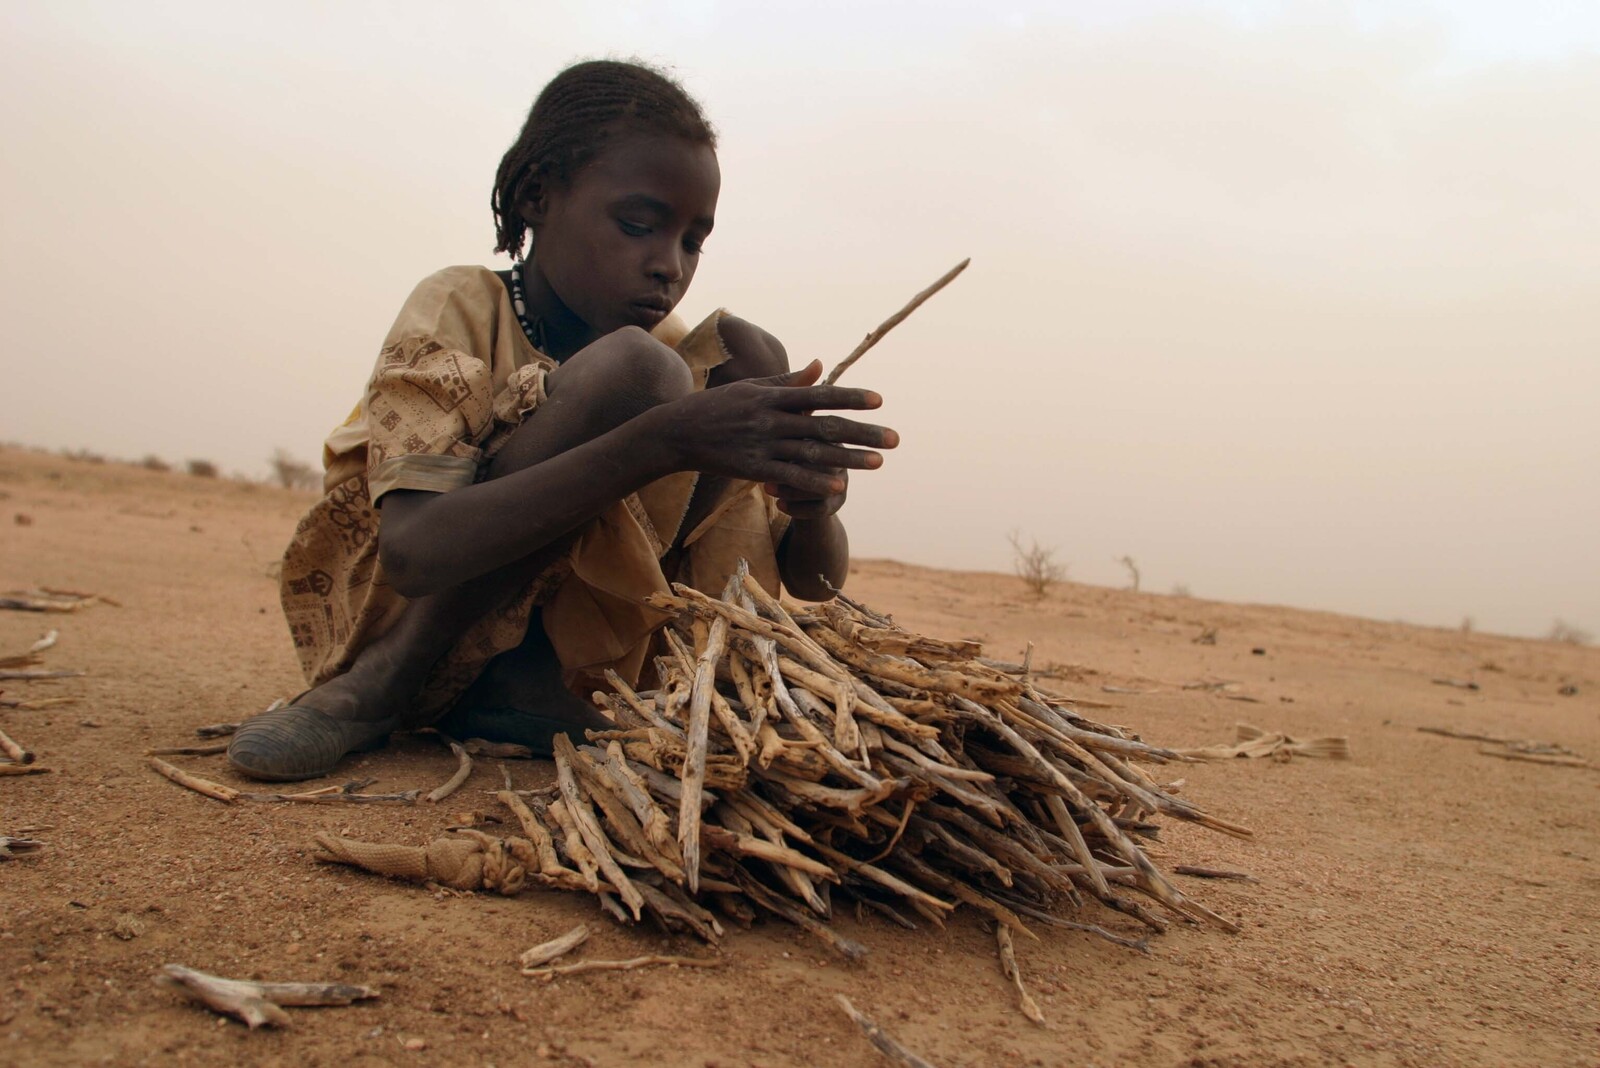 Ein Mädchen sucht Feuerholz währen einer Dürre im Tschad. Die Menschen leiden unter der Trockenheit.